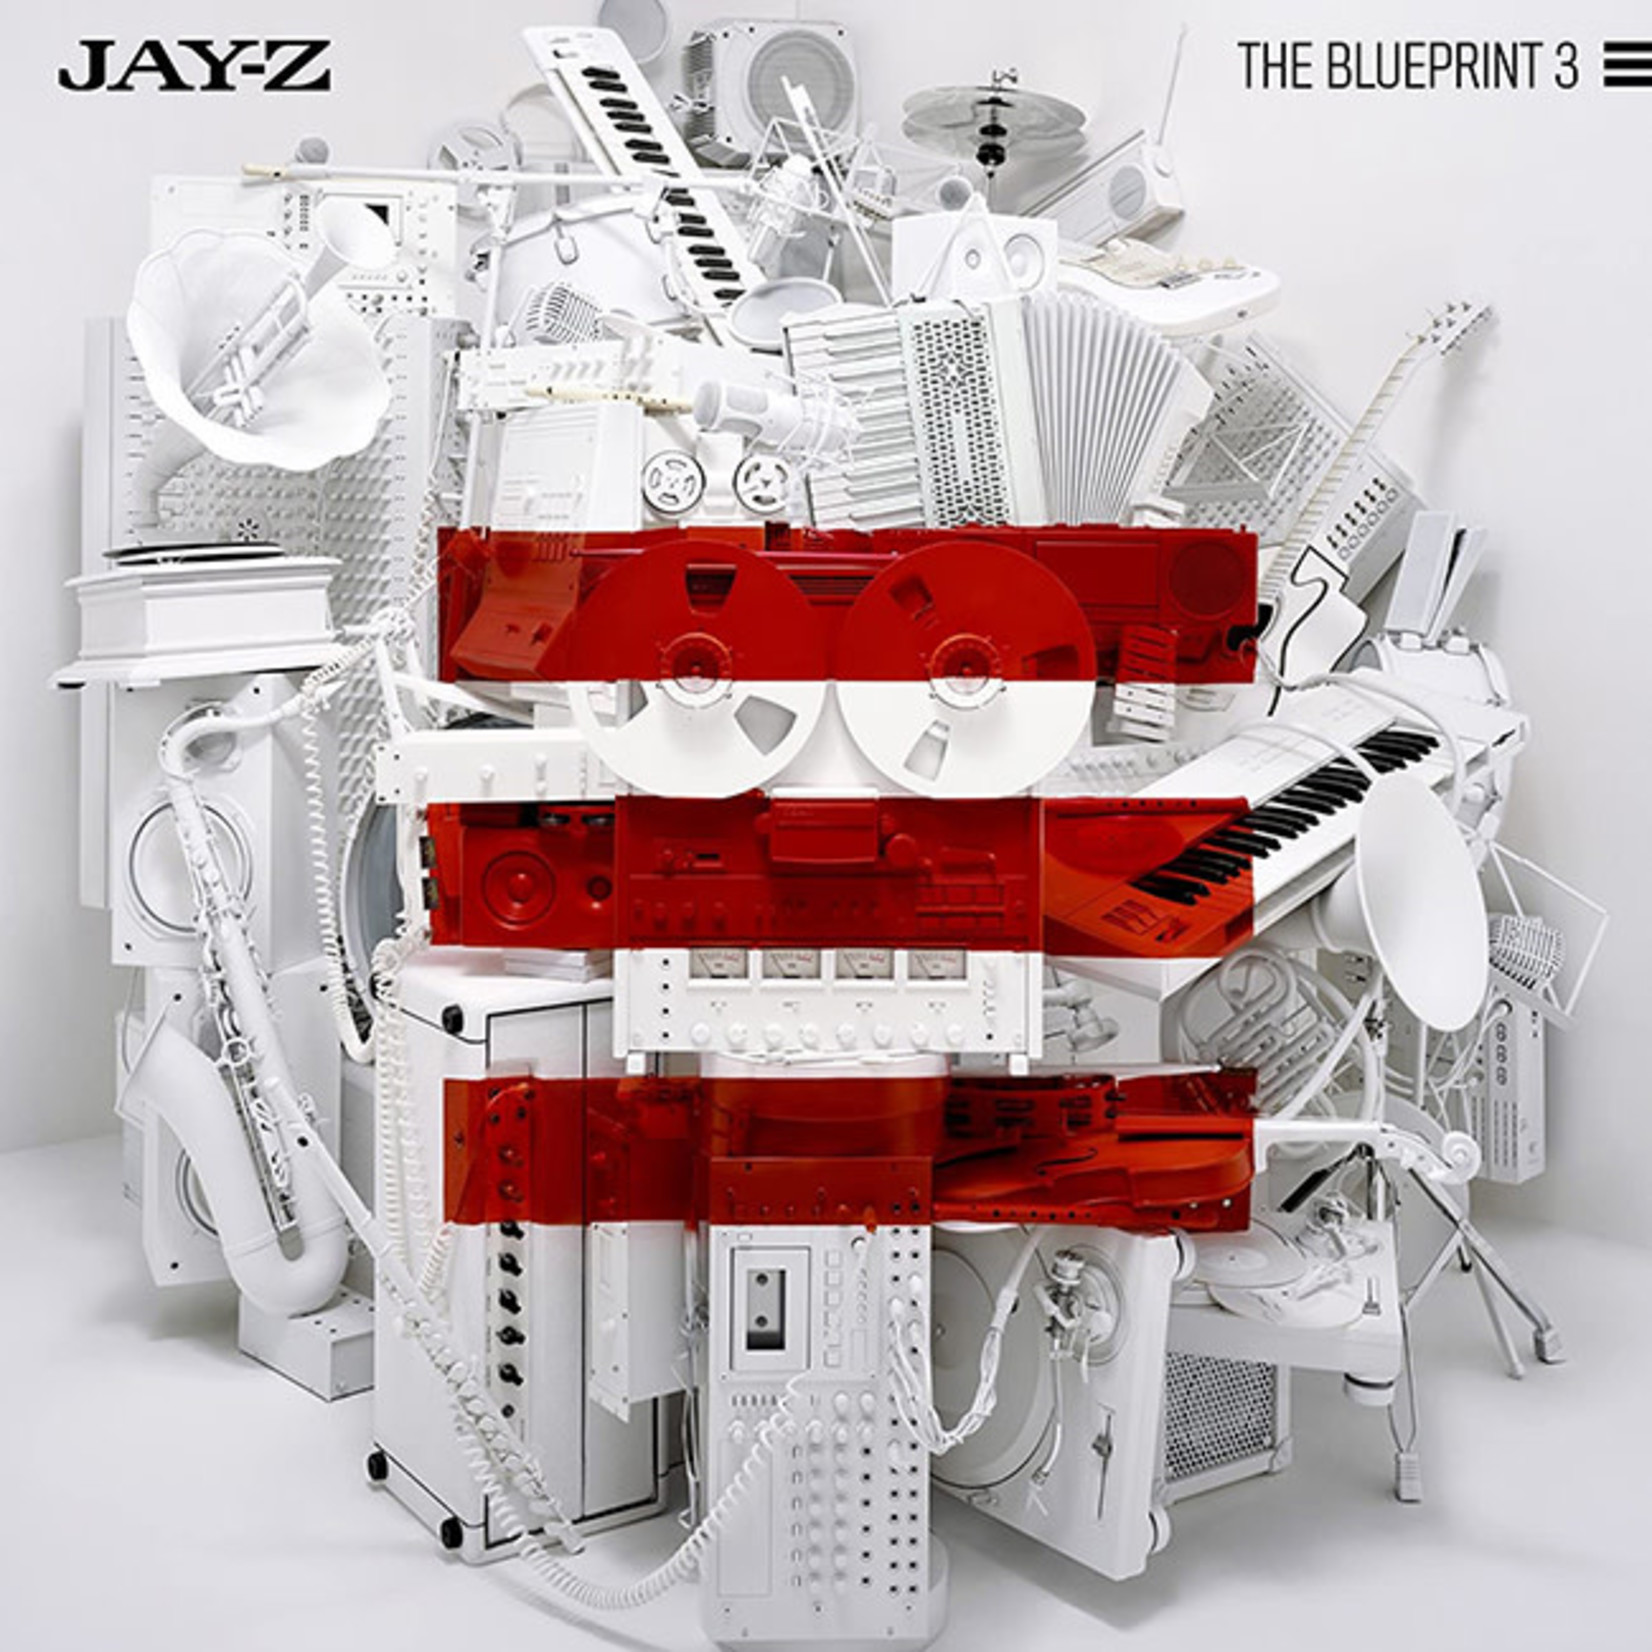 [New] Jay Z - The Blueprint 3 (2LP)